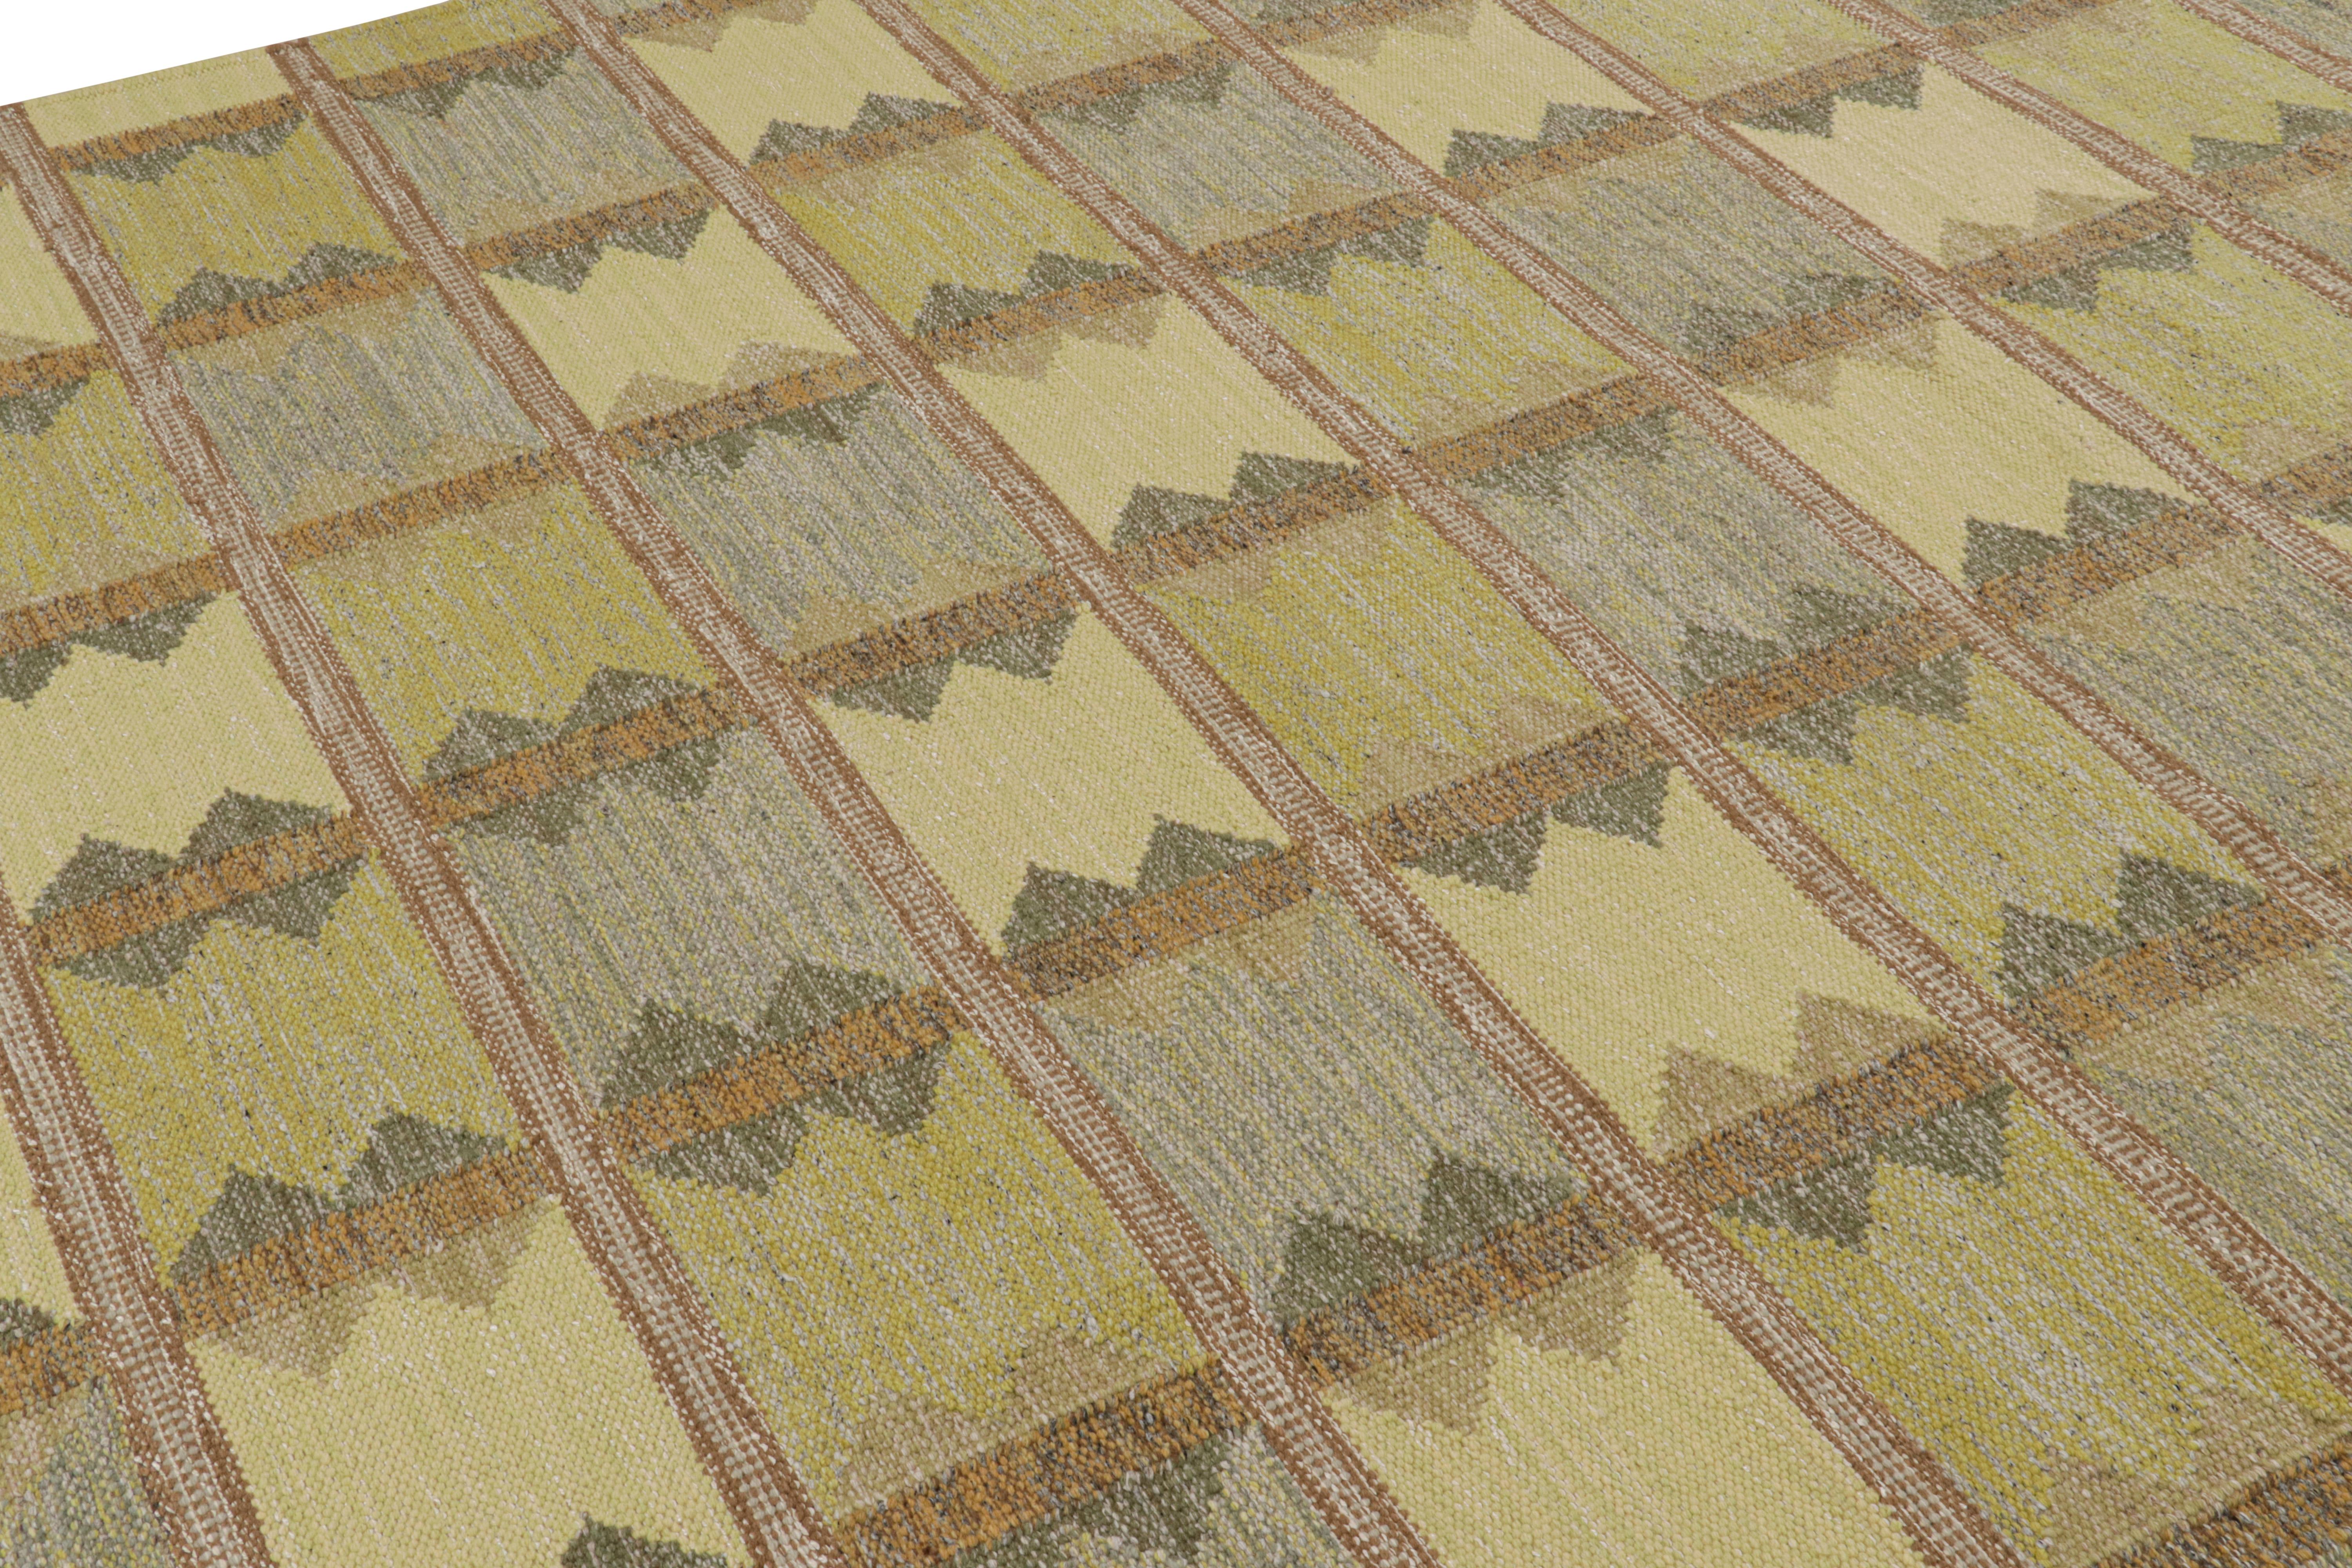 Dieser 8x10 große schwedische Teppich ist eine kühne Ergänzung der skandinavischen Kollektion von Rug & Kilim. Das handgewebte Flachgewebe aus Wolle mit ungefärbten Naturgarnen ist von schwedischen minimalistischen Designs inspiriert.

Über das